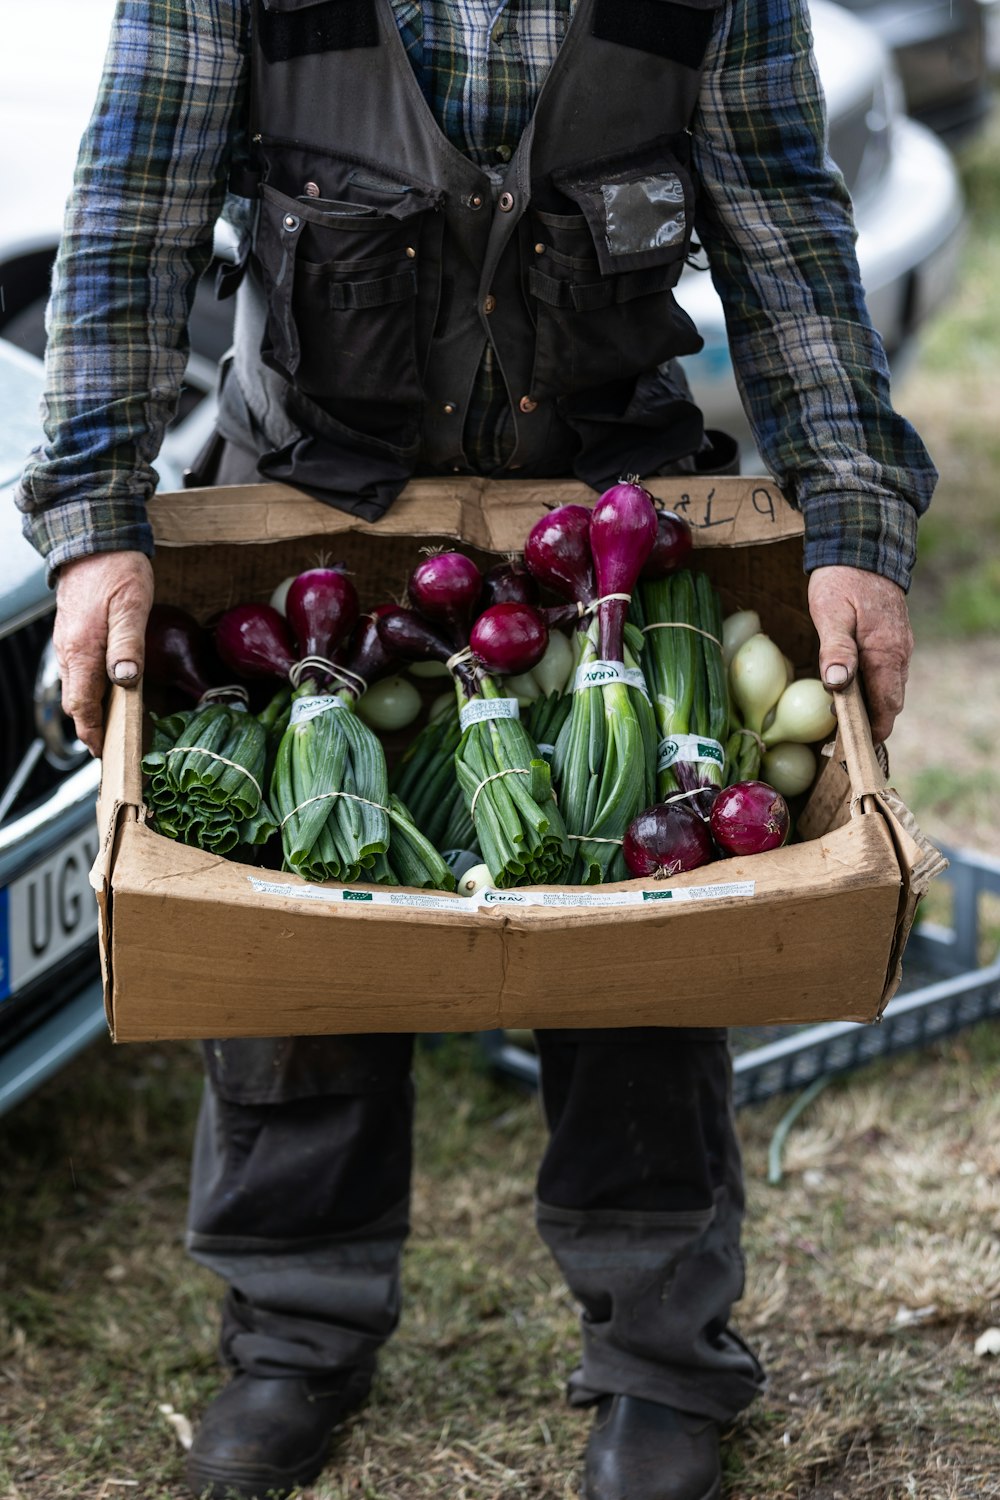 Un hombre sosteniendo una caja de cartón llena de verduras